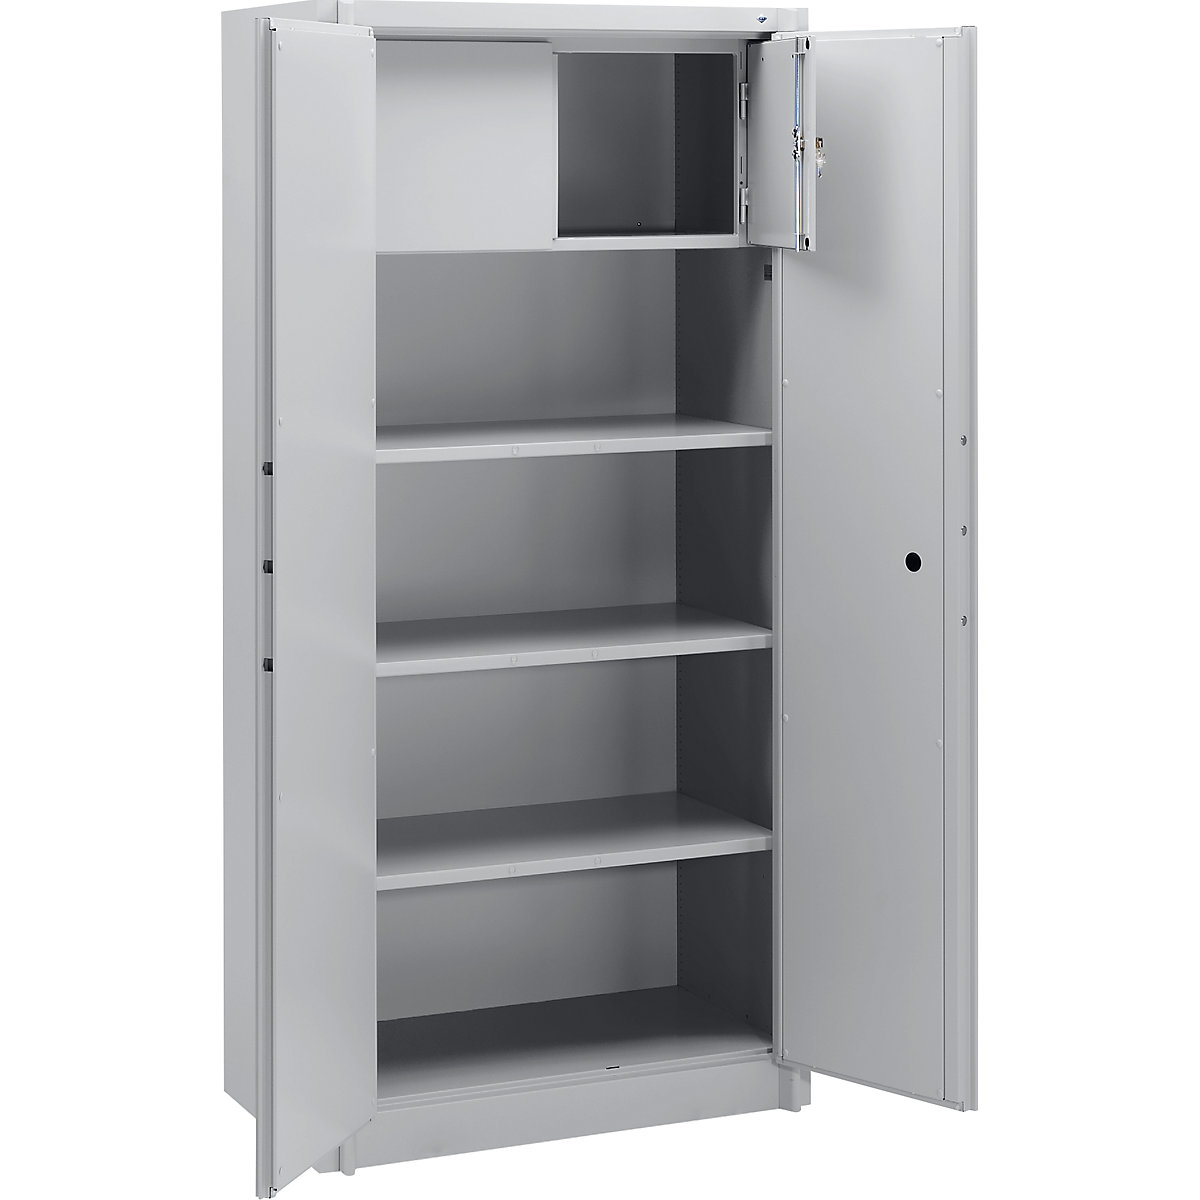 Steel cupboard, fireproof – C+P, DIN 4102 compliant, HxWxD 1950 x 930 x 500 mm, light grey, with locker-10